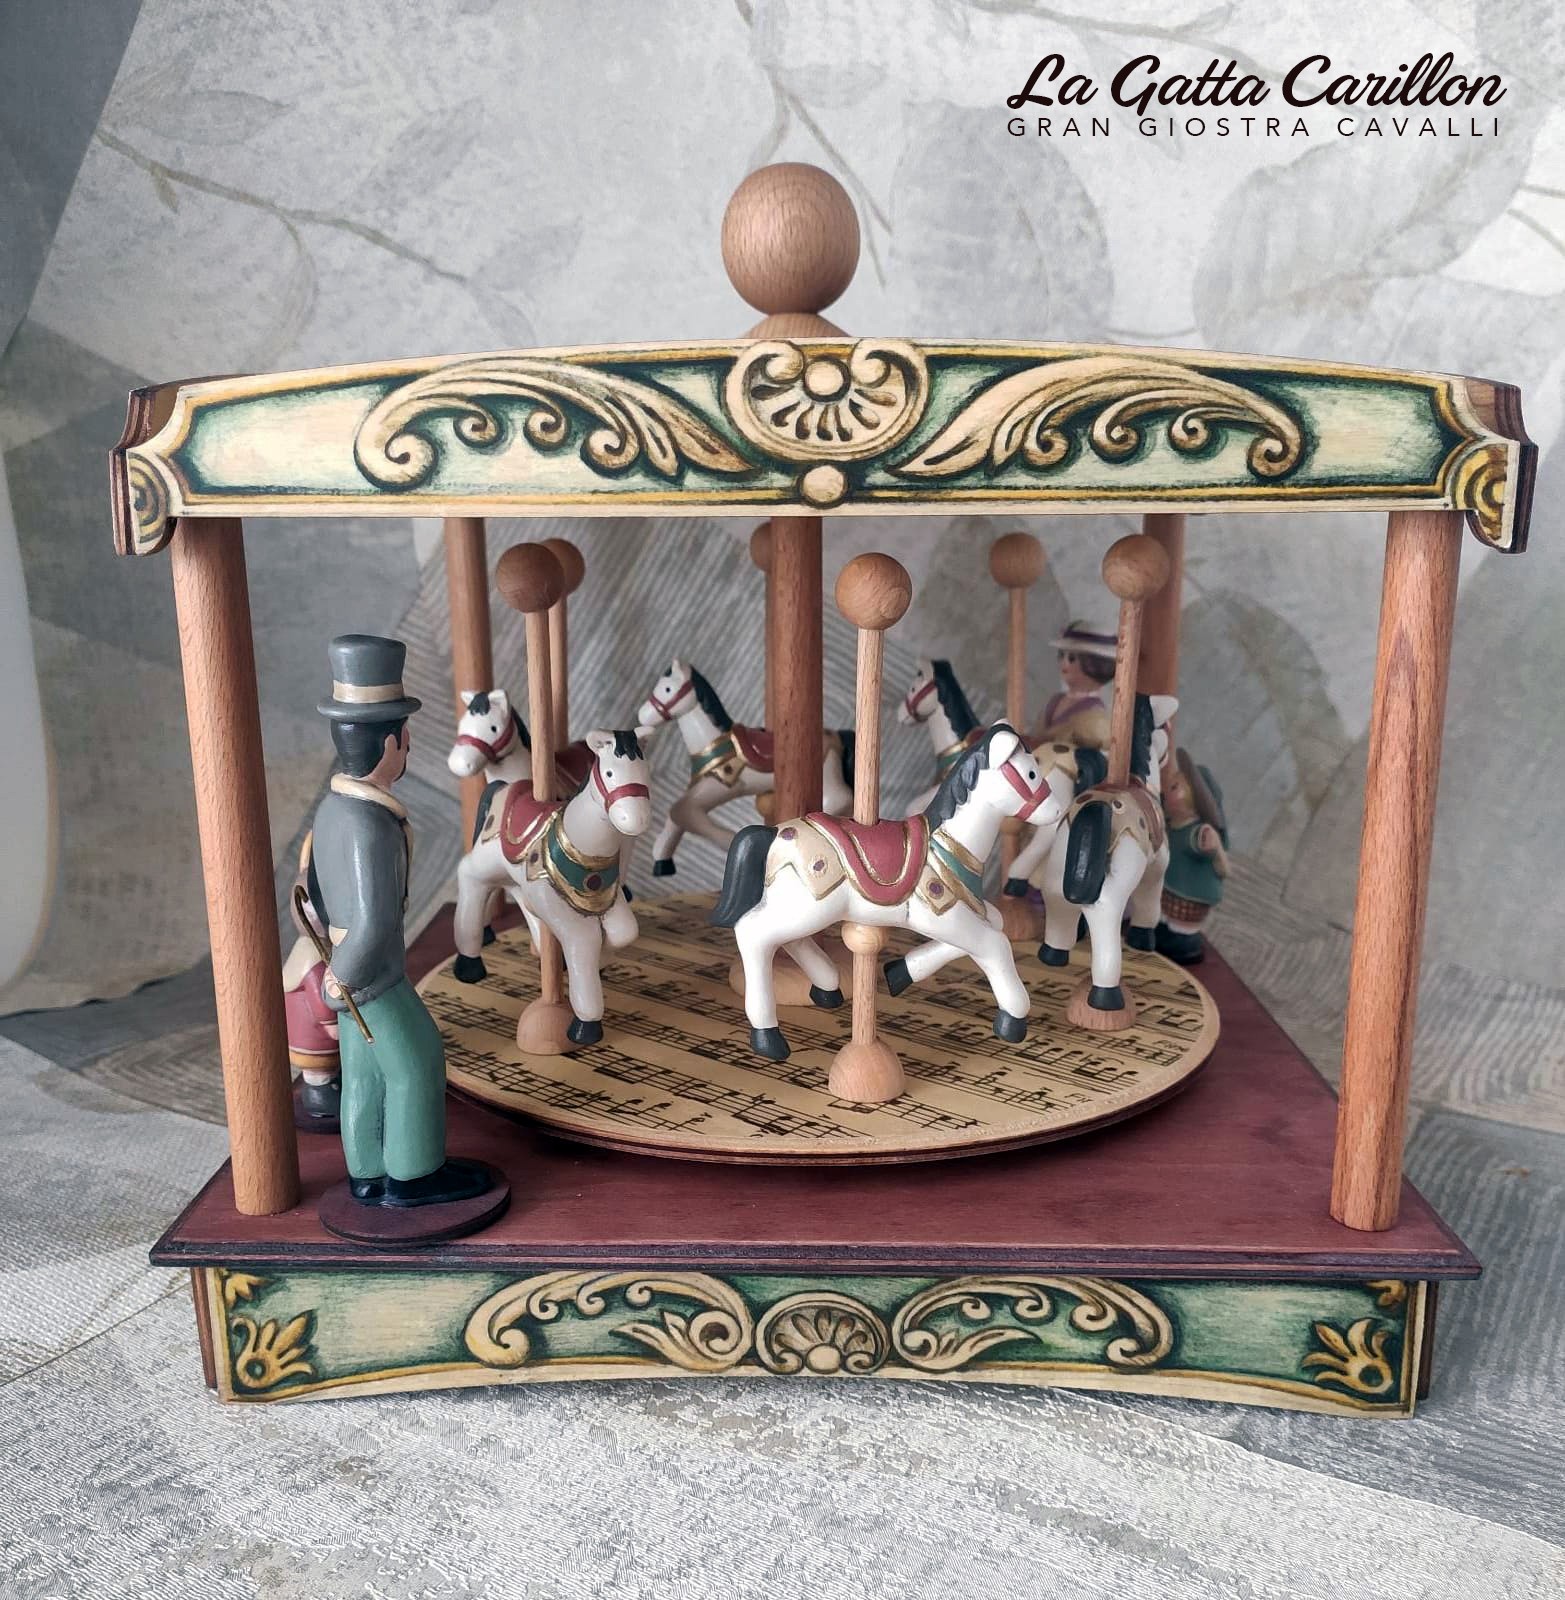 Carillon giostra cavalli (legno e ceramica) - Horses carousel